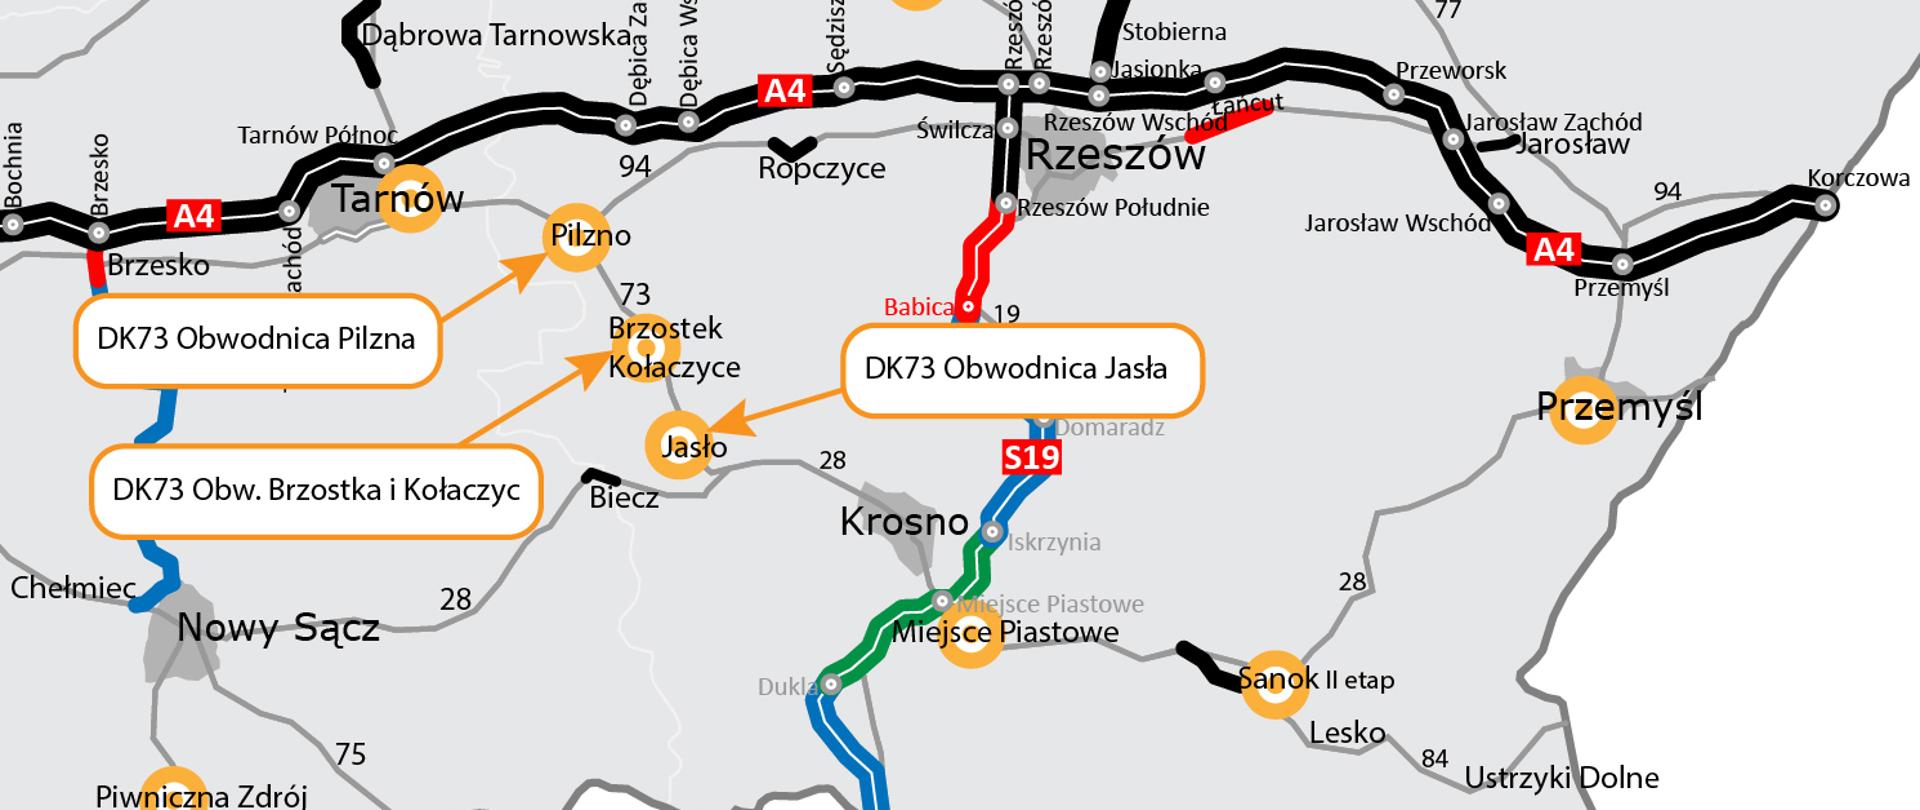 mapa z zaznaczoną lokalizacją obwodnic Pilzna, Jasła, Brzostku i Kołaczyc